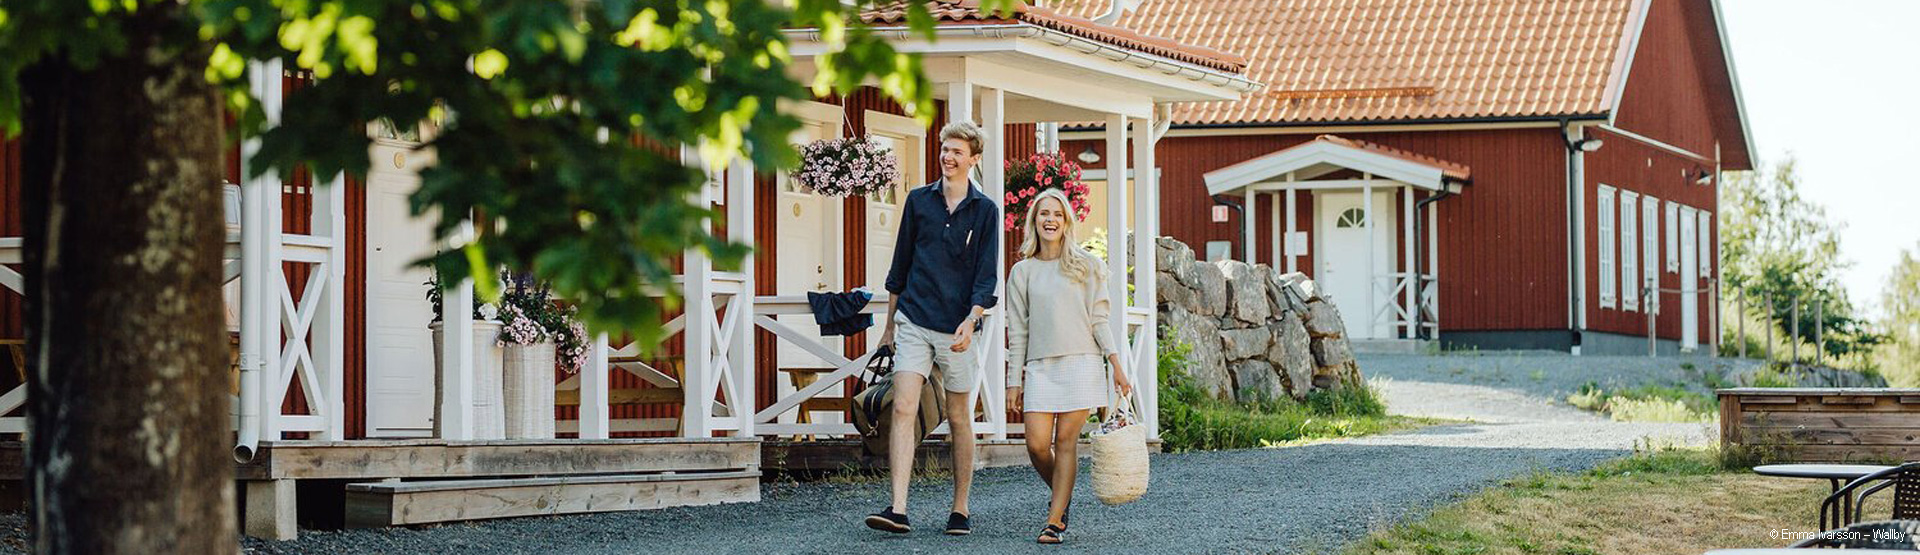 Småland Urlaub: Reisen nach Südschweden jetzt bei uns buchen!